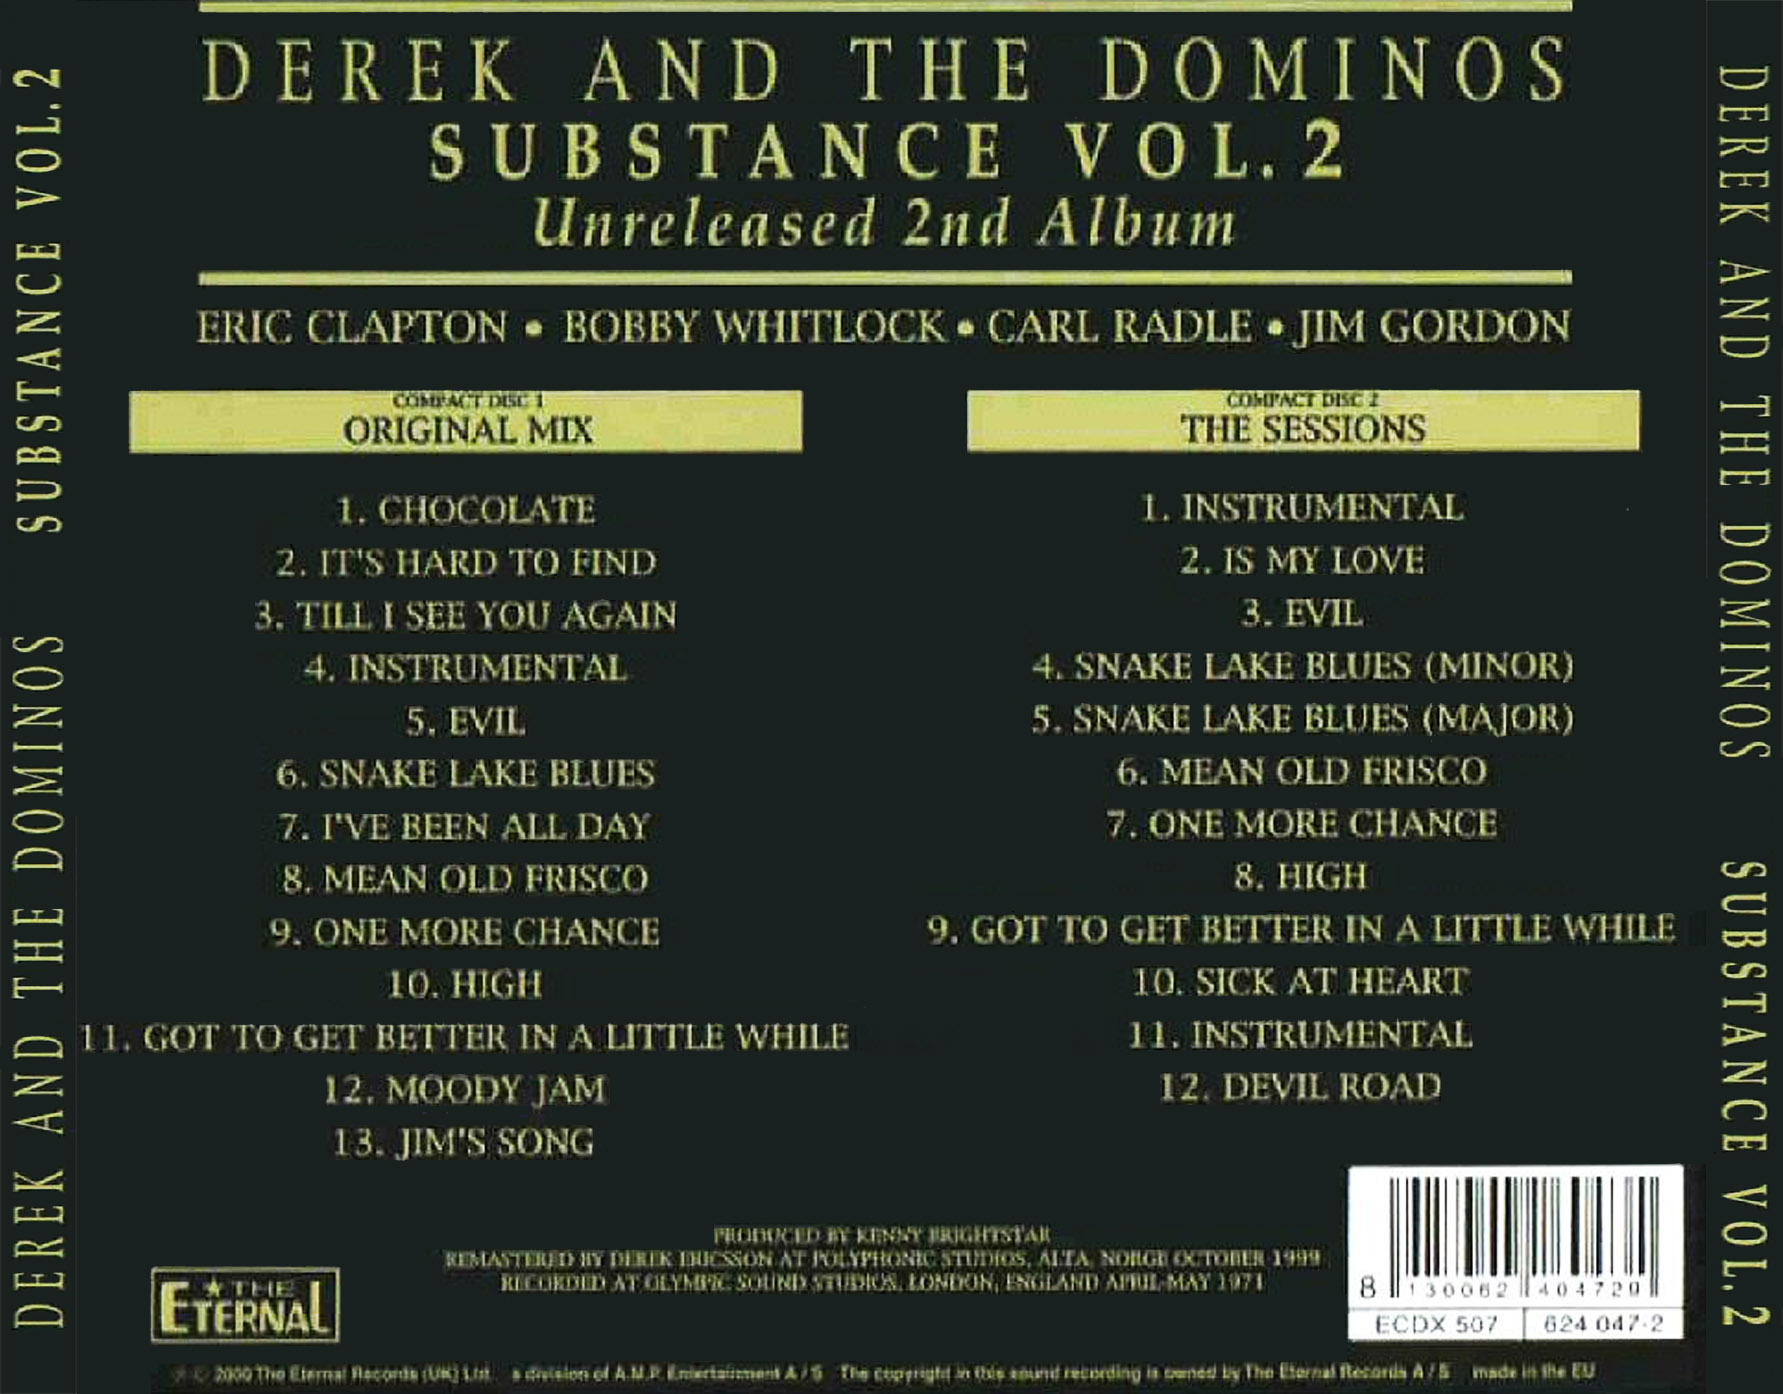 DerekAndTheDominoes1970UnreleasedSecondAlbum (1).jpg